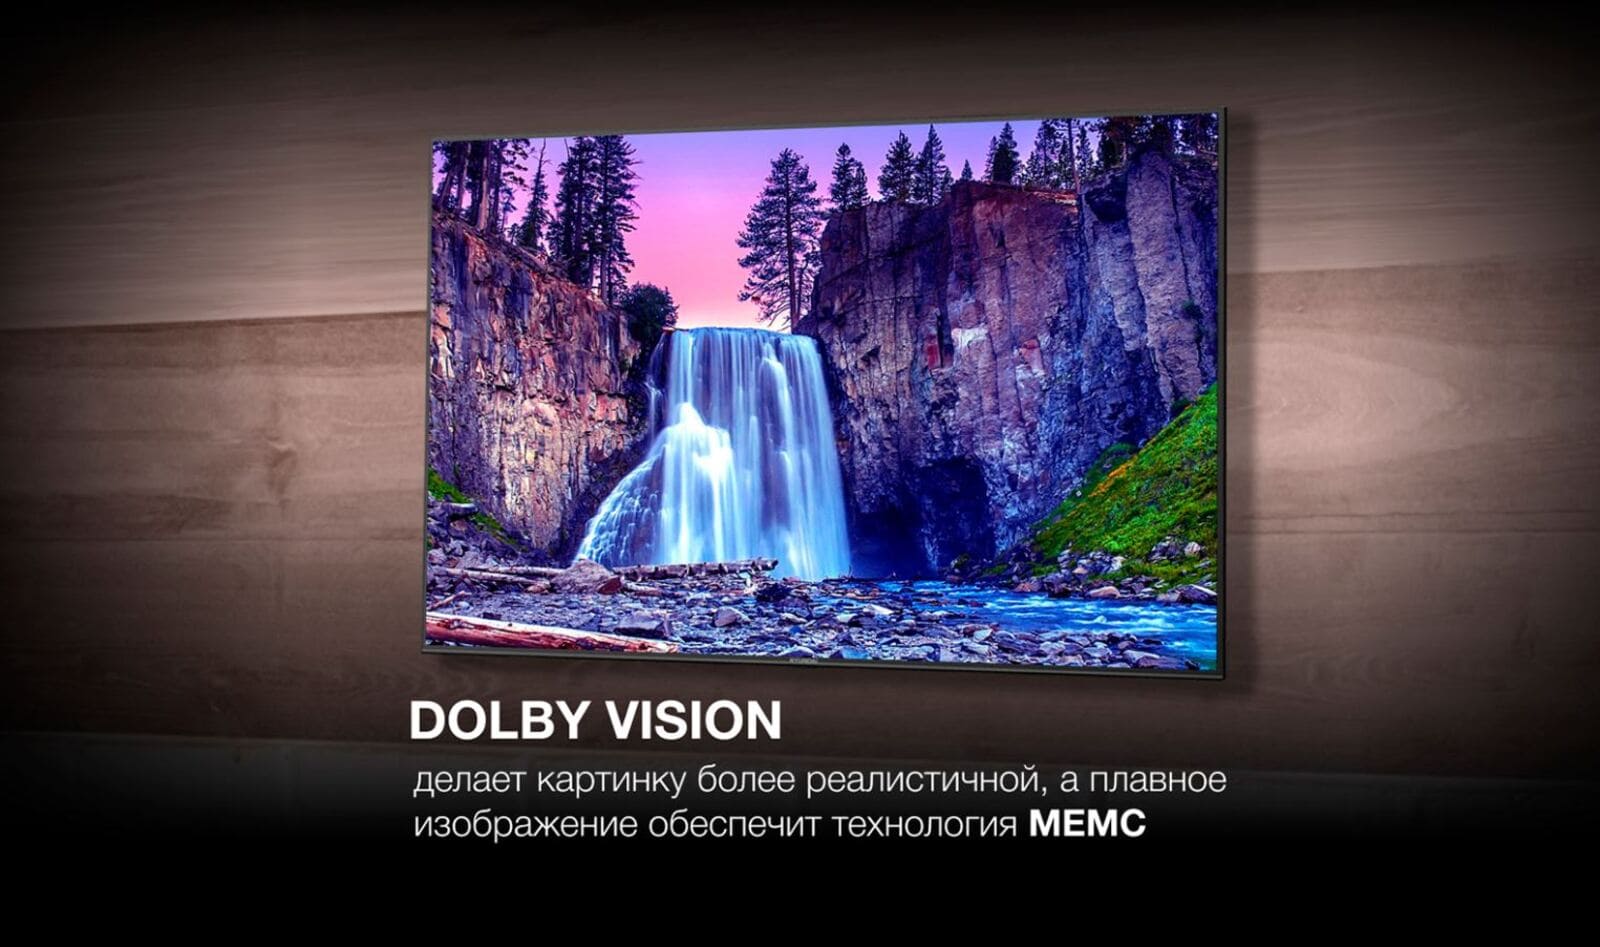 Dolby Vision делает картинку более реалистичной, а плавное изображение обеспечит технология МЕМС.